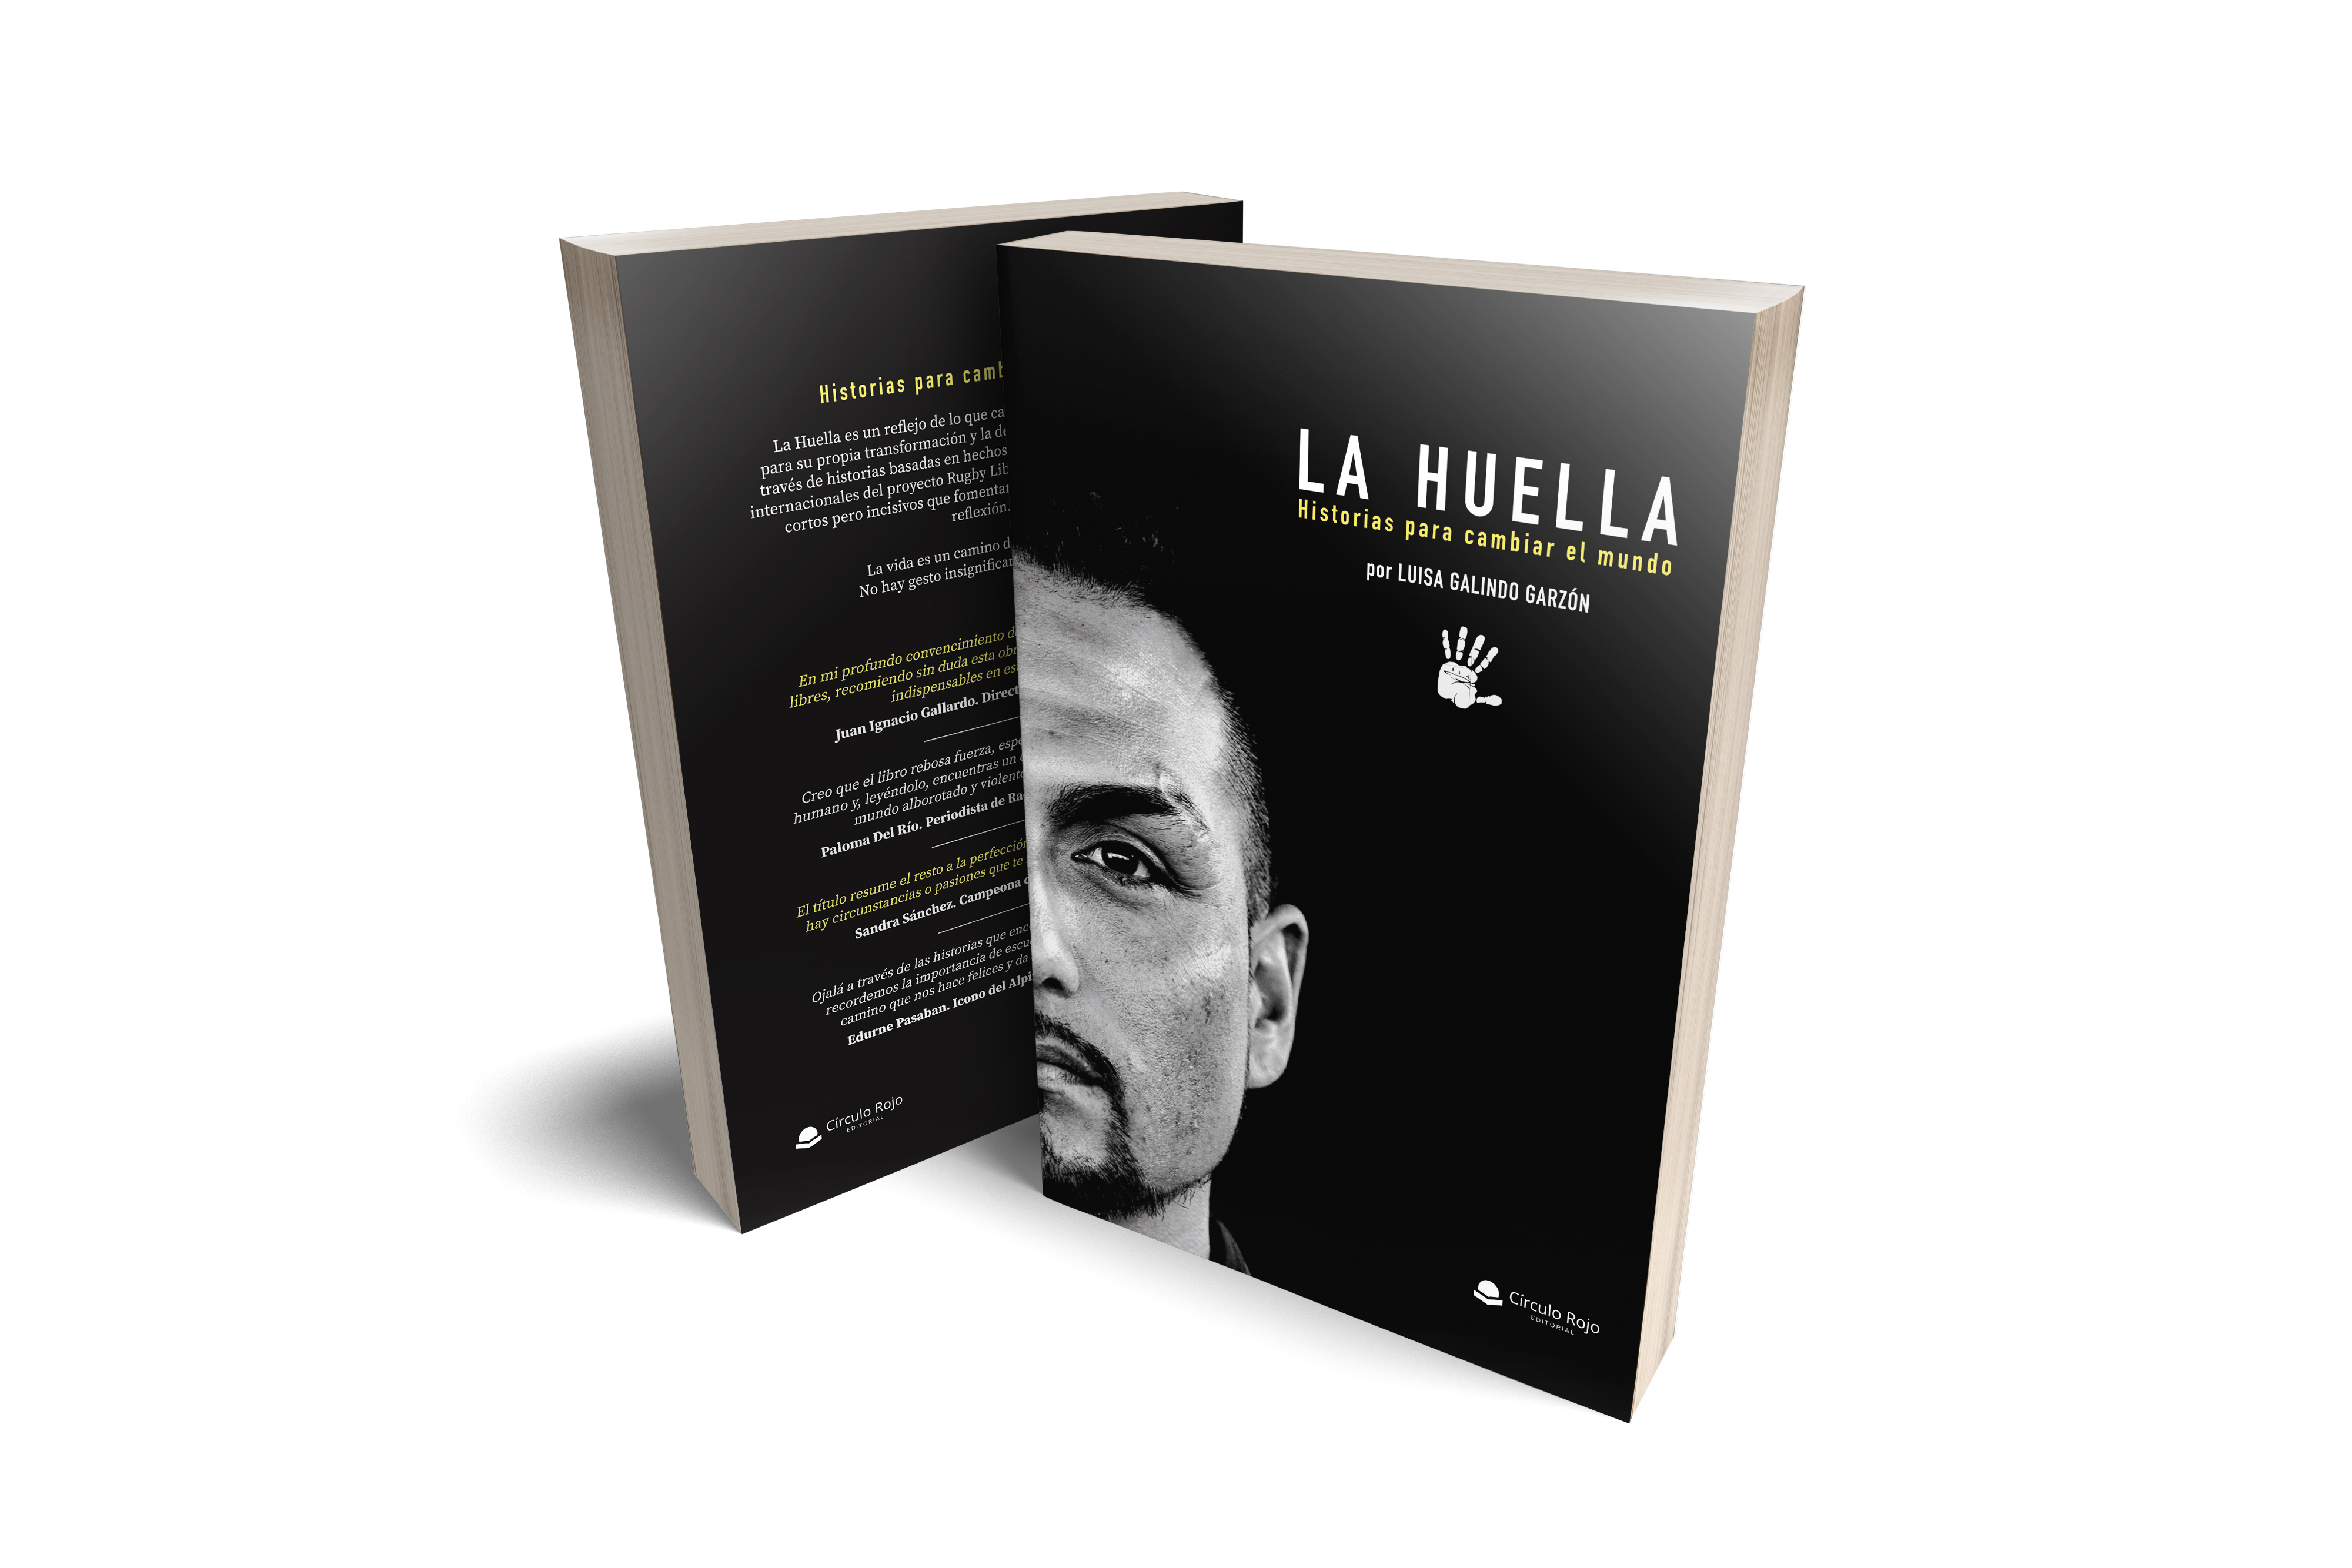 La Huella es un libro escrito por Luisa Galindo y apoyado por PGR ONG / Patricia García